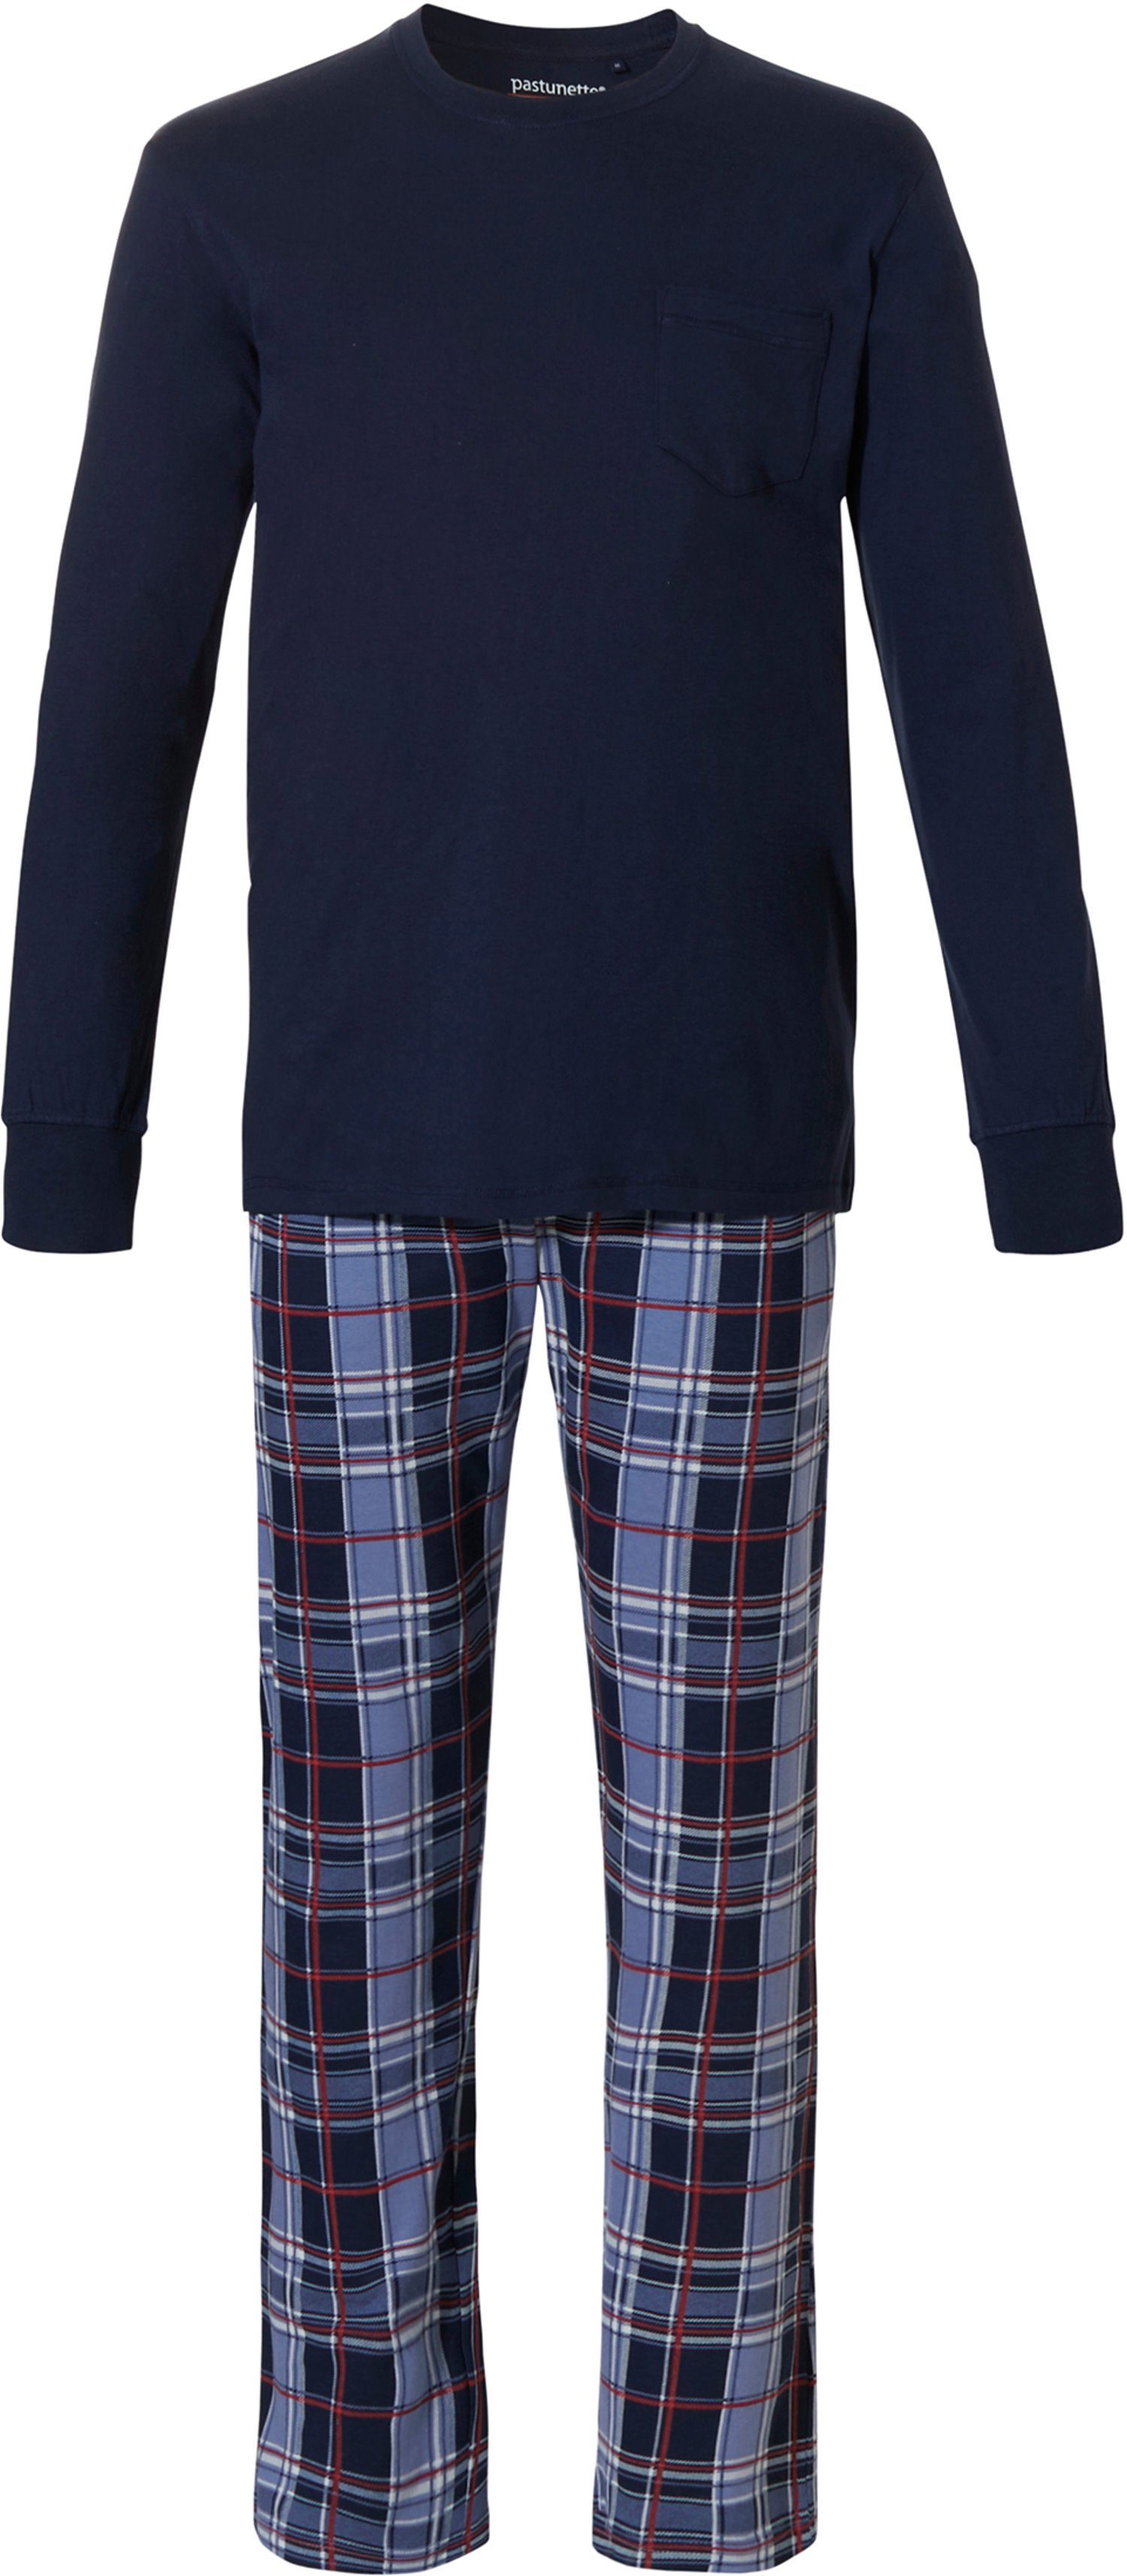 Pastunette Pyjama Herren Schlafanzug (2 tlg) Jersey Qualität